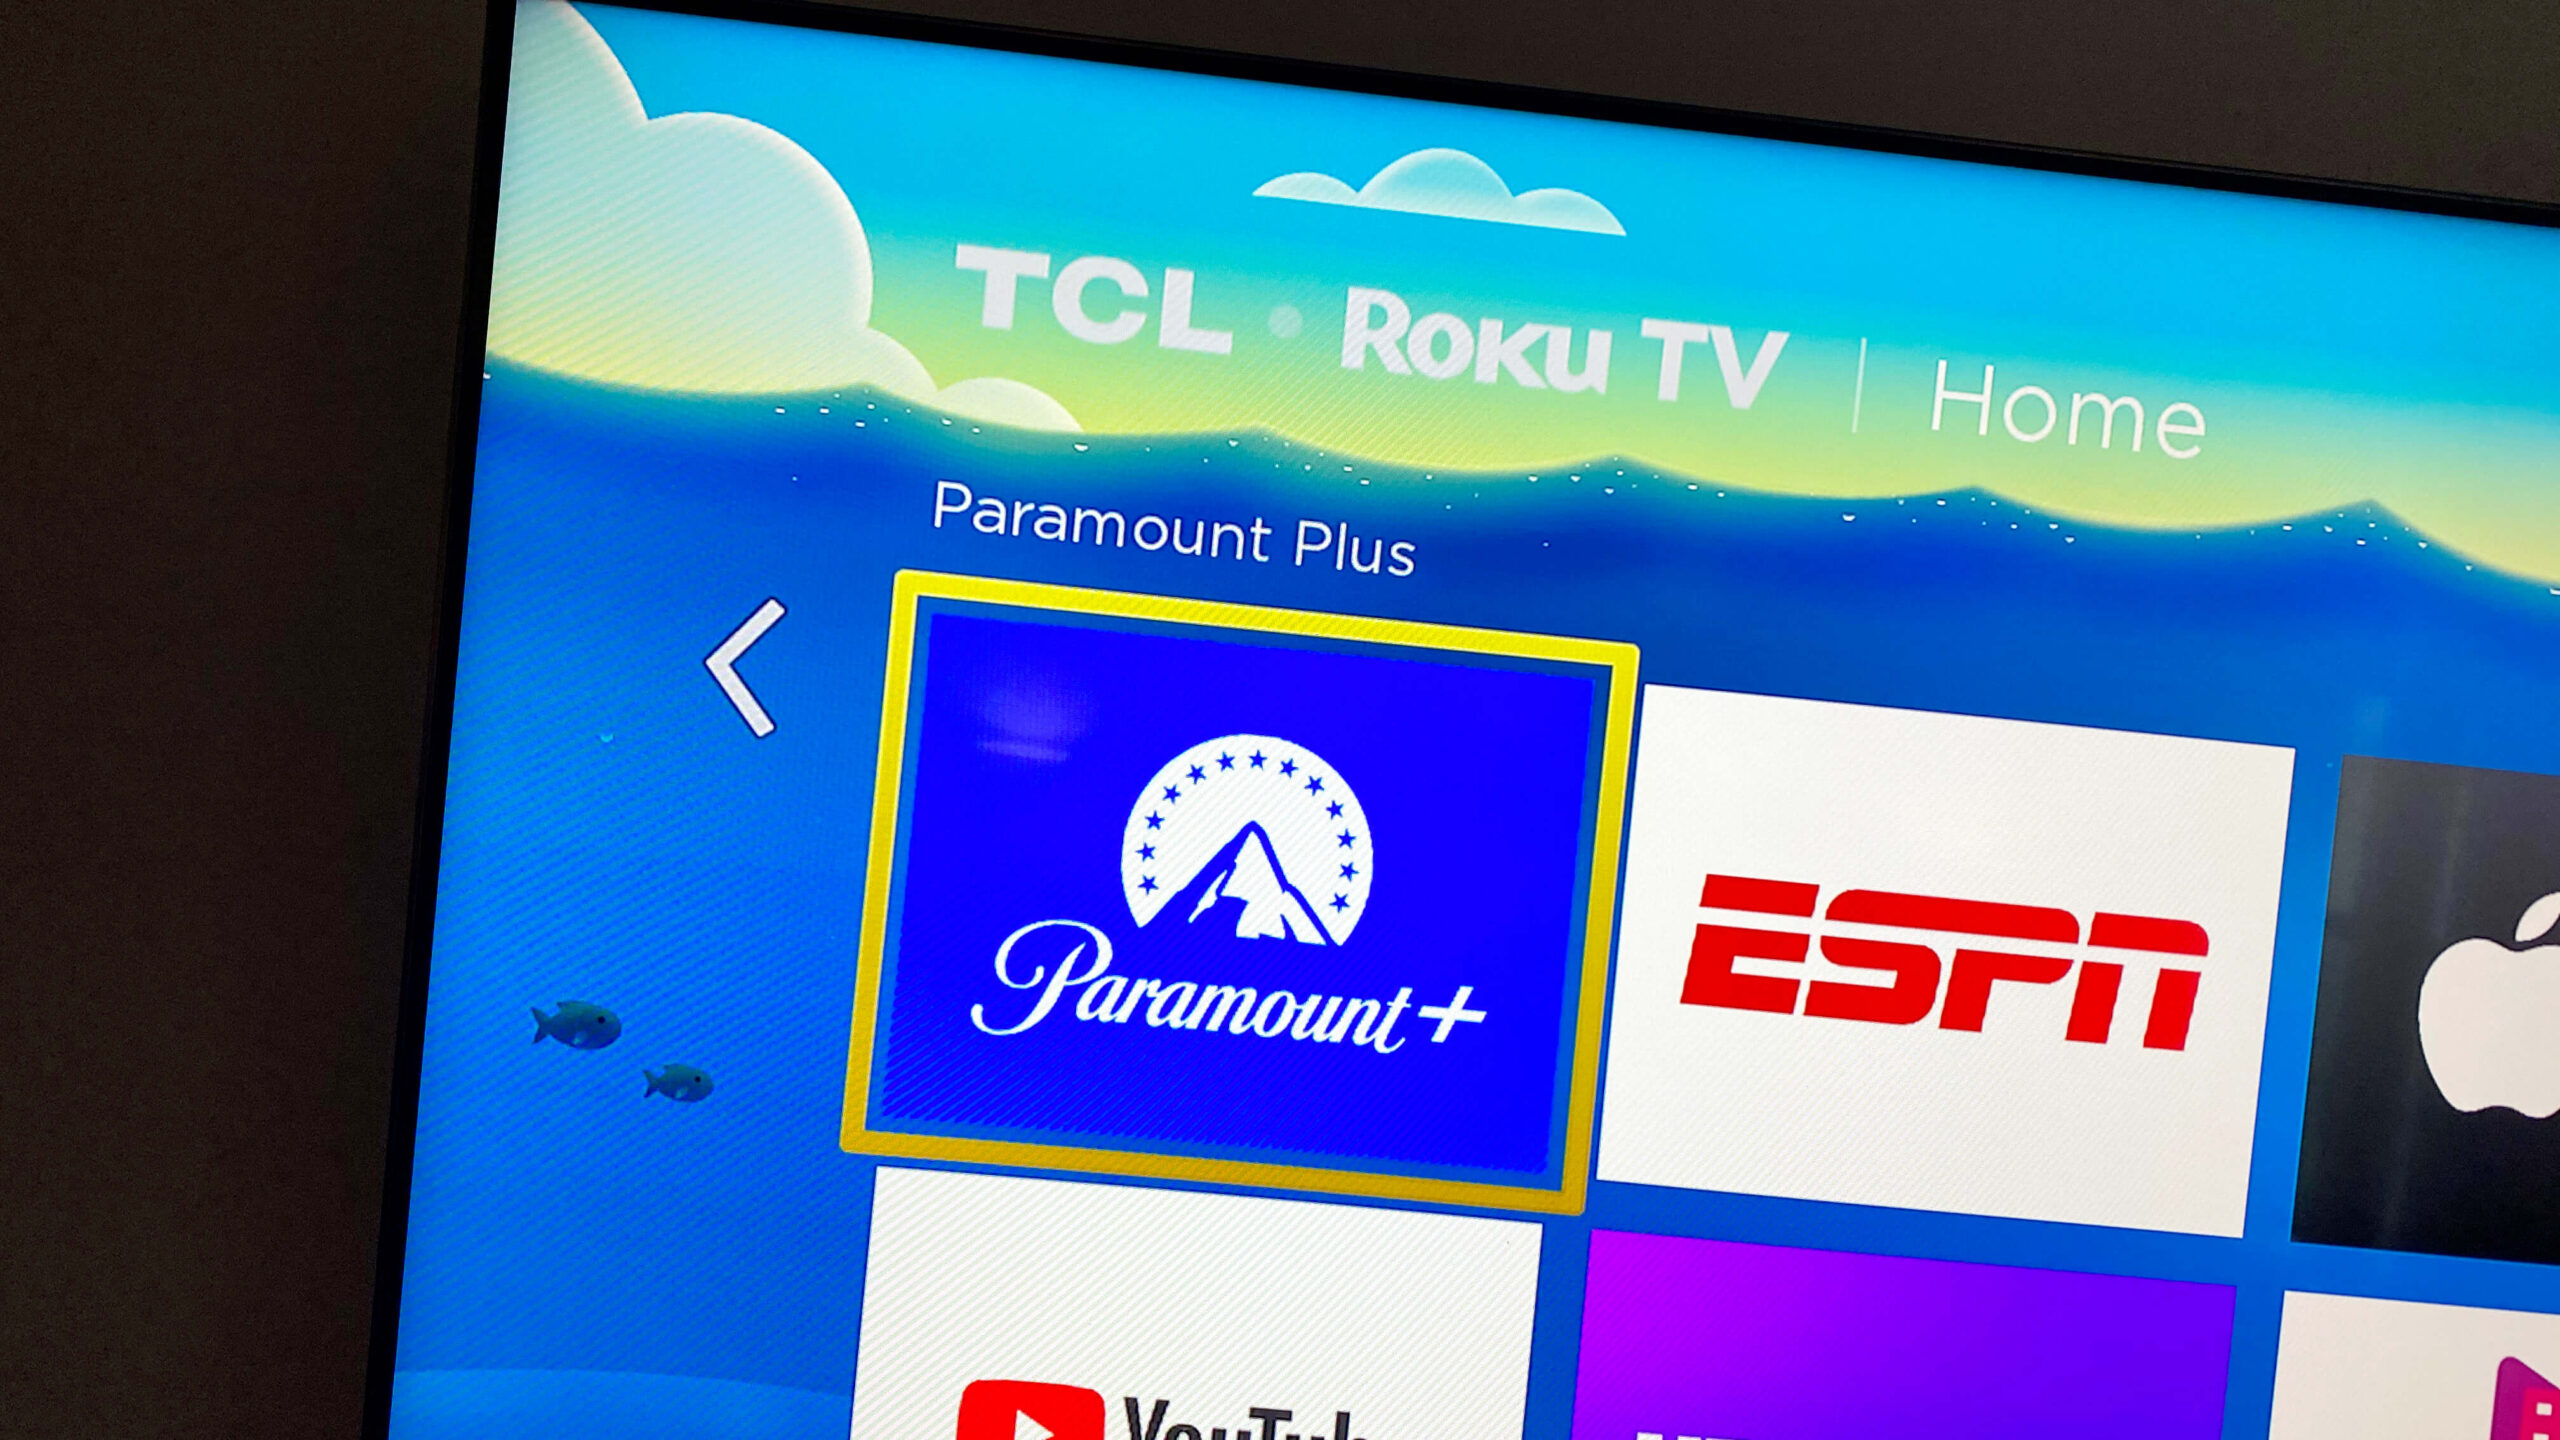 Paramount Plus/Roku